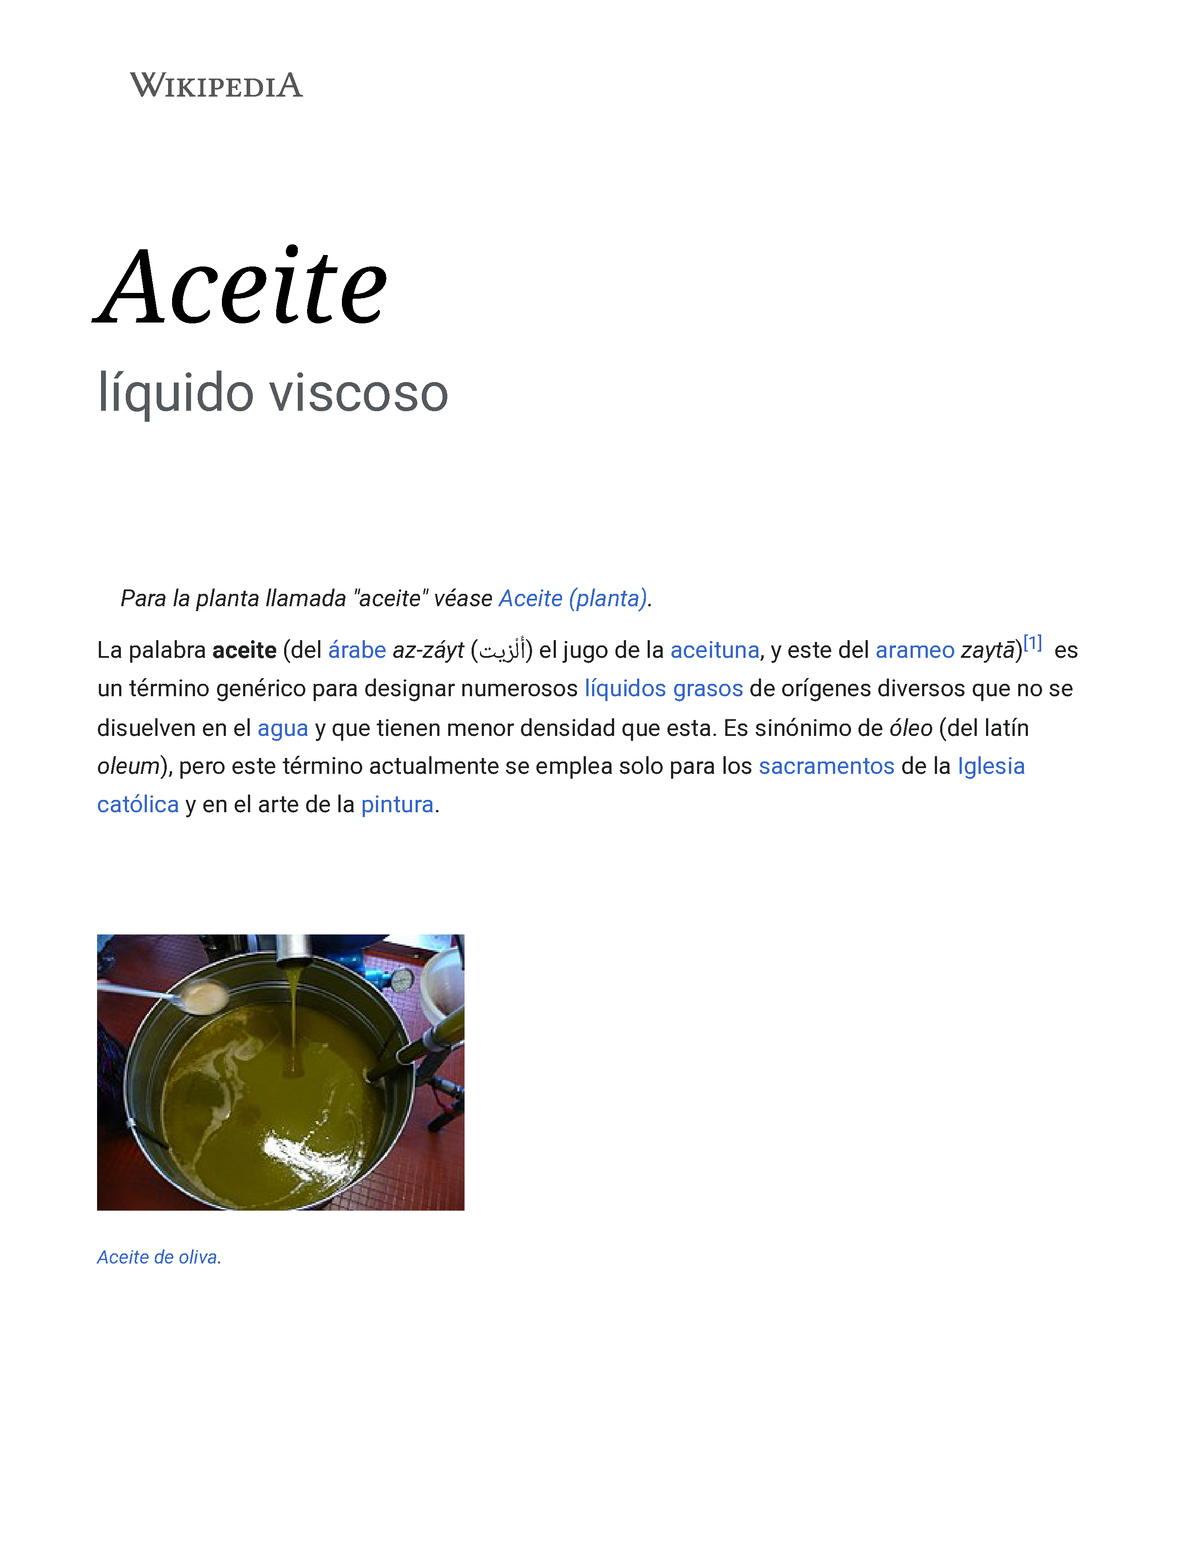 Lámpara de aceite - Wikipedia, la enciclopedia libre